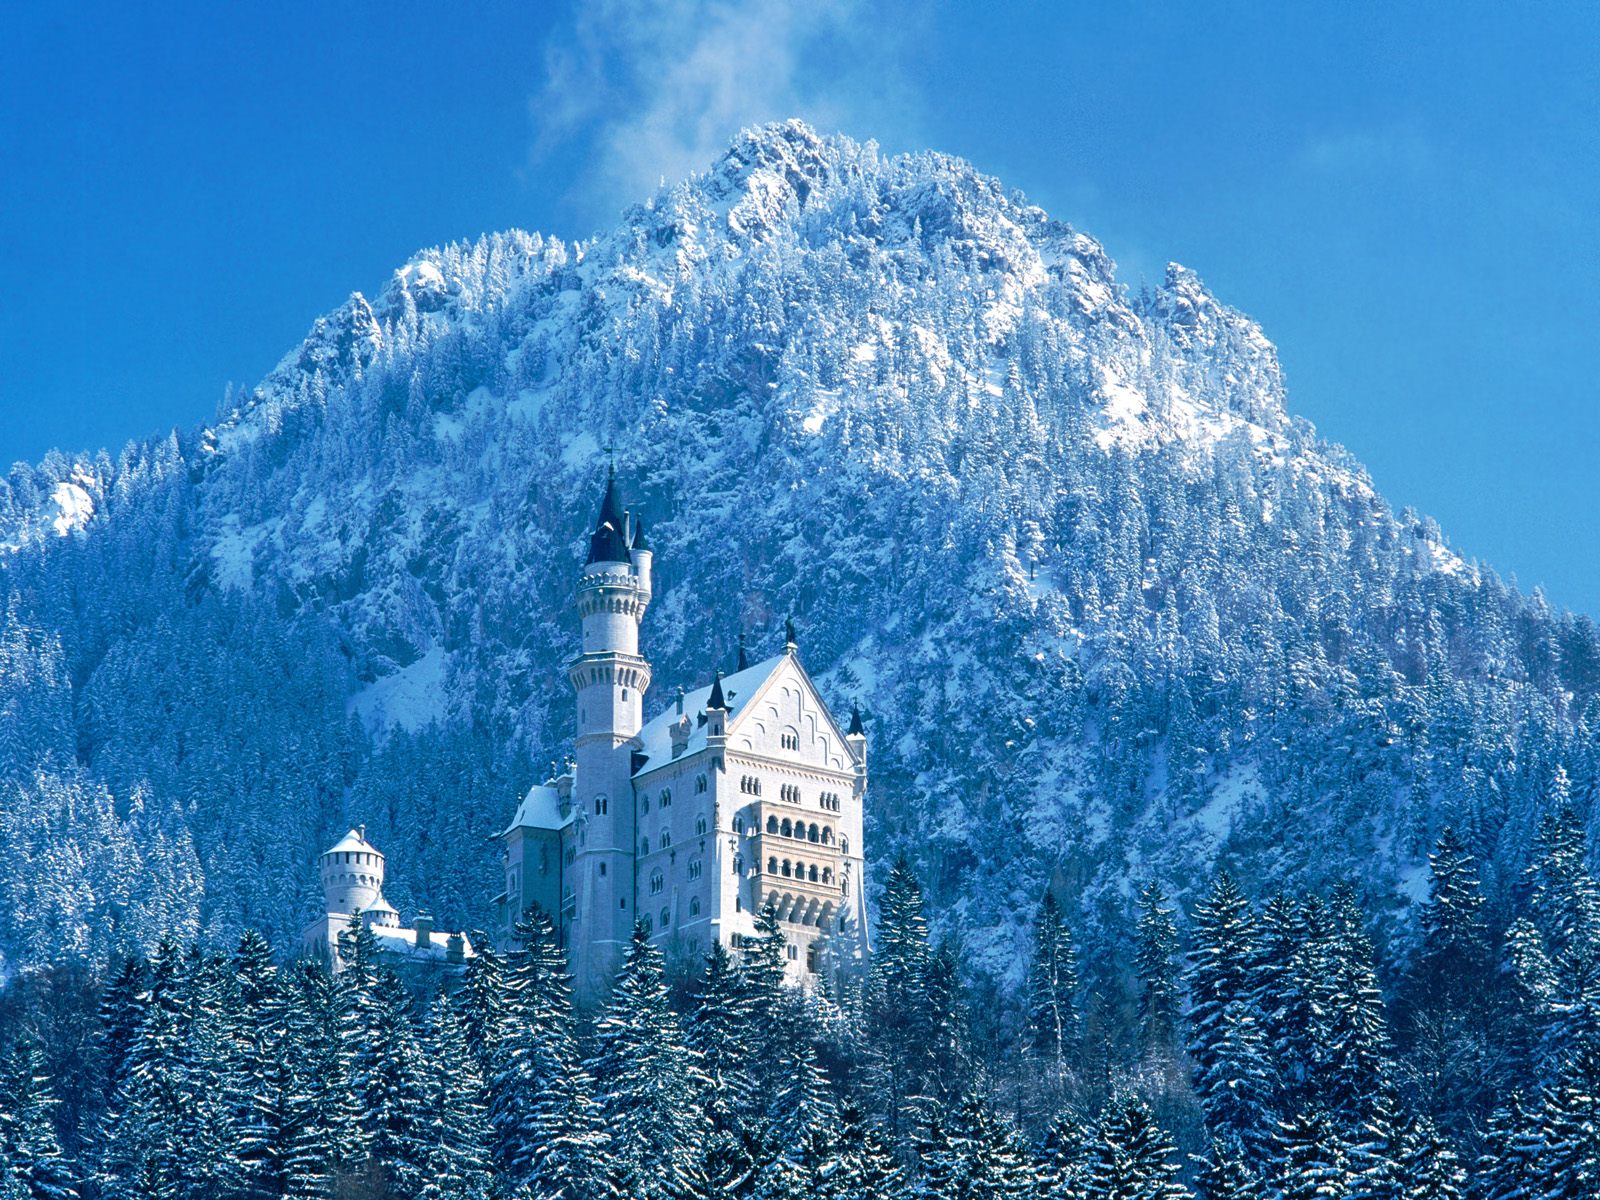 Neuschwanstein_Castle_Bavaria_Germany_-_snow.jpg